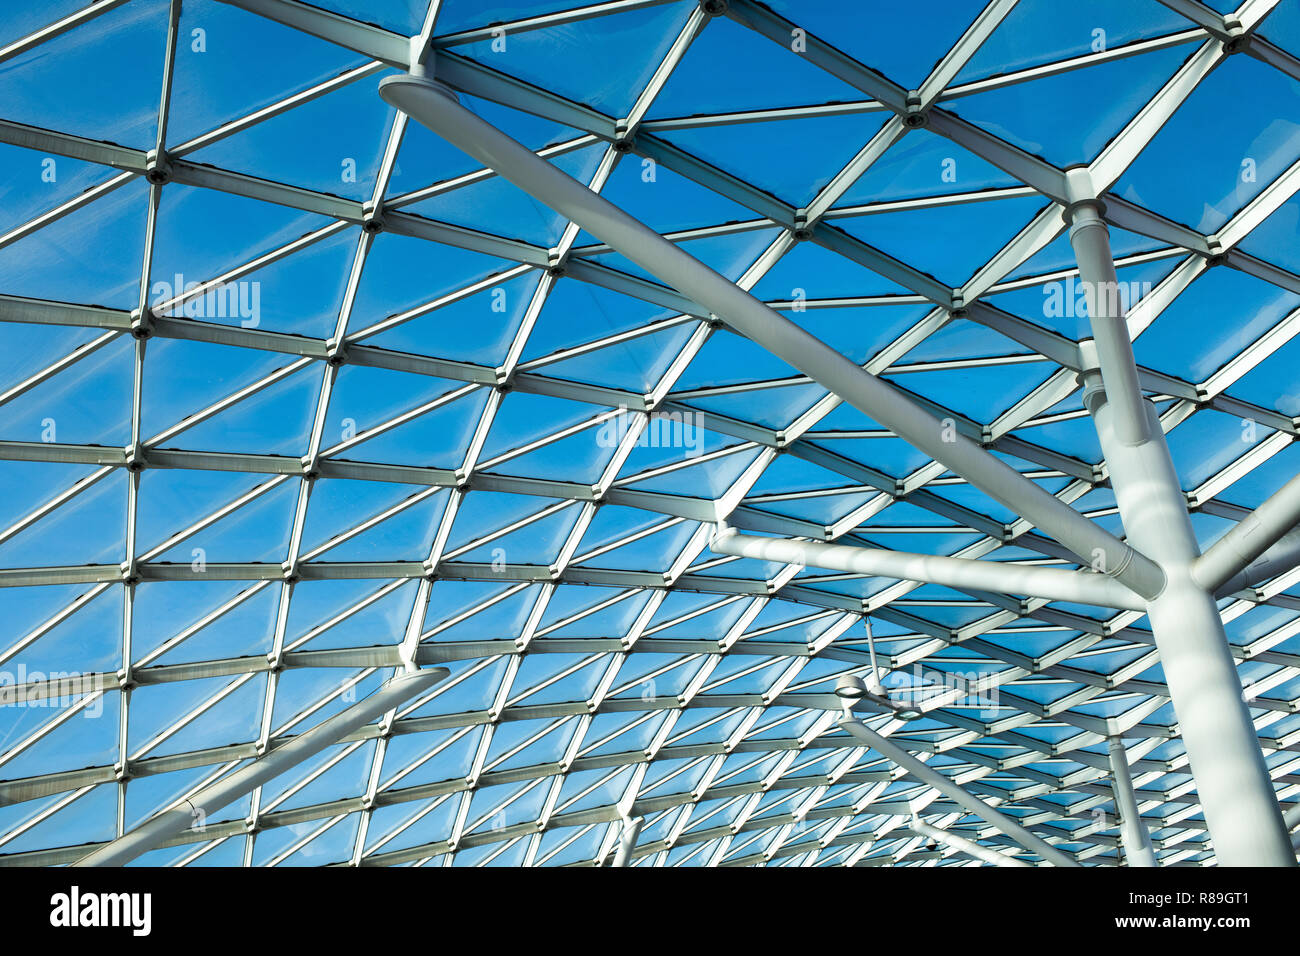 L'architecture moderne en verre avec grille métallique constructions, vu de l'angle faible, avec ciel bleu clair derrière Banque D'Images